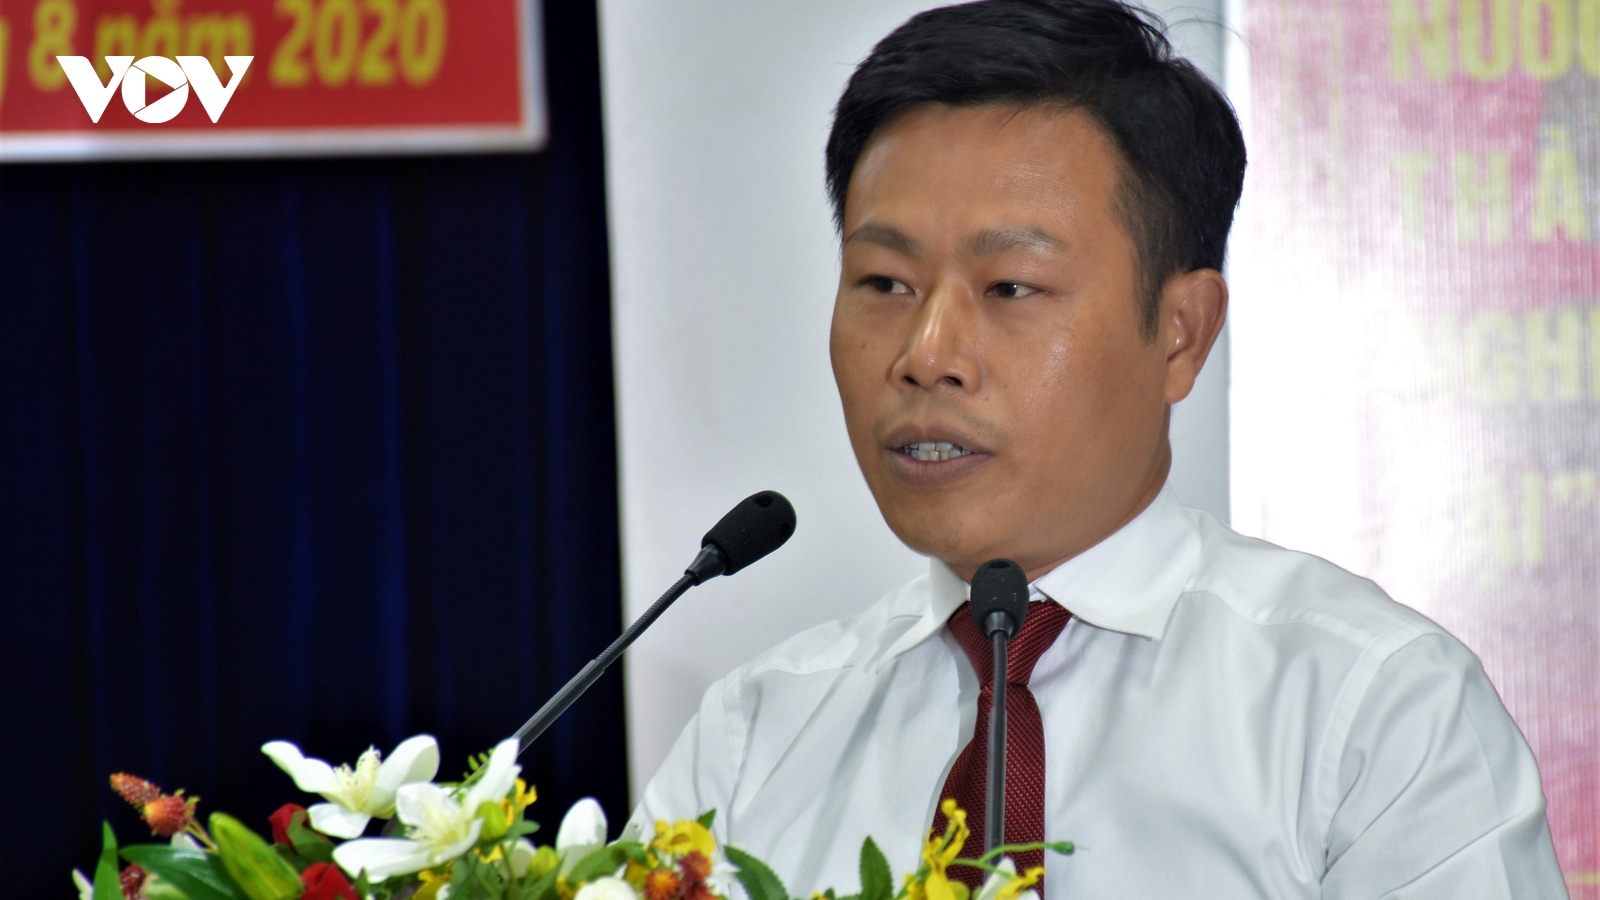 Thủ tướng phê chuẩn kết quả bầu ông Lê Quân làm Chủ tịch UBND tỉnh Cà Mau